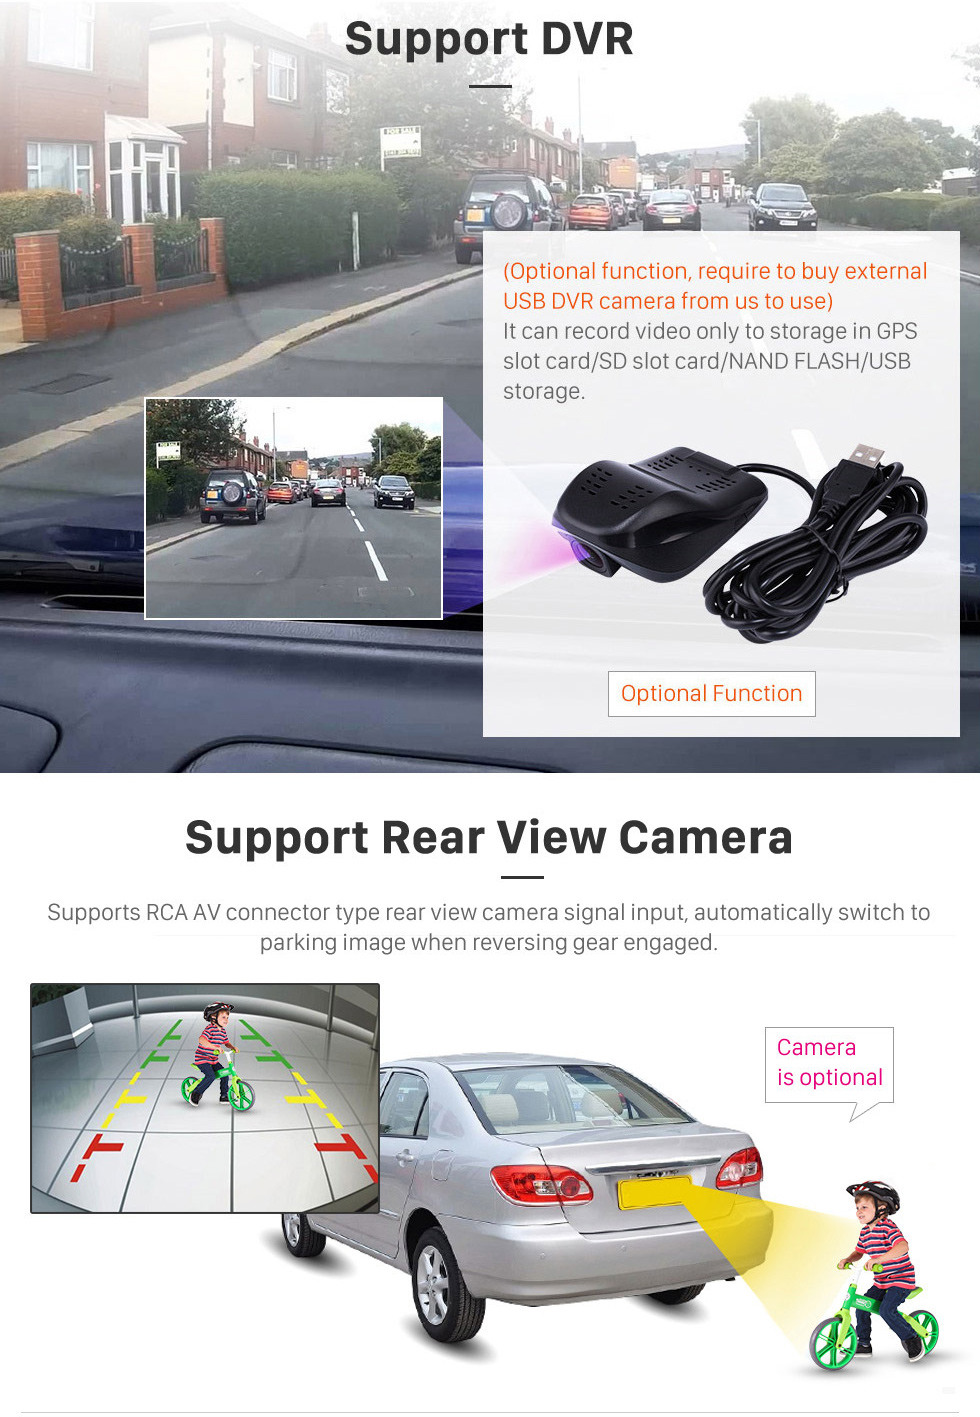 Seicane 9-дюймовый Android 13.0 для Mazda 3 Axela 2014, 2015, 2016 годов, стереосистема GPS-навигации с поддержкой Bluetooth TouchScreen, камера заднего вида